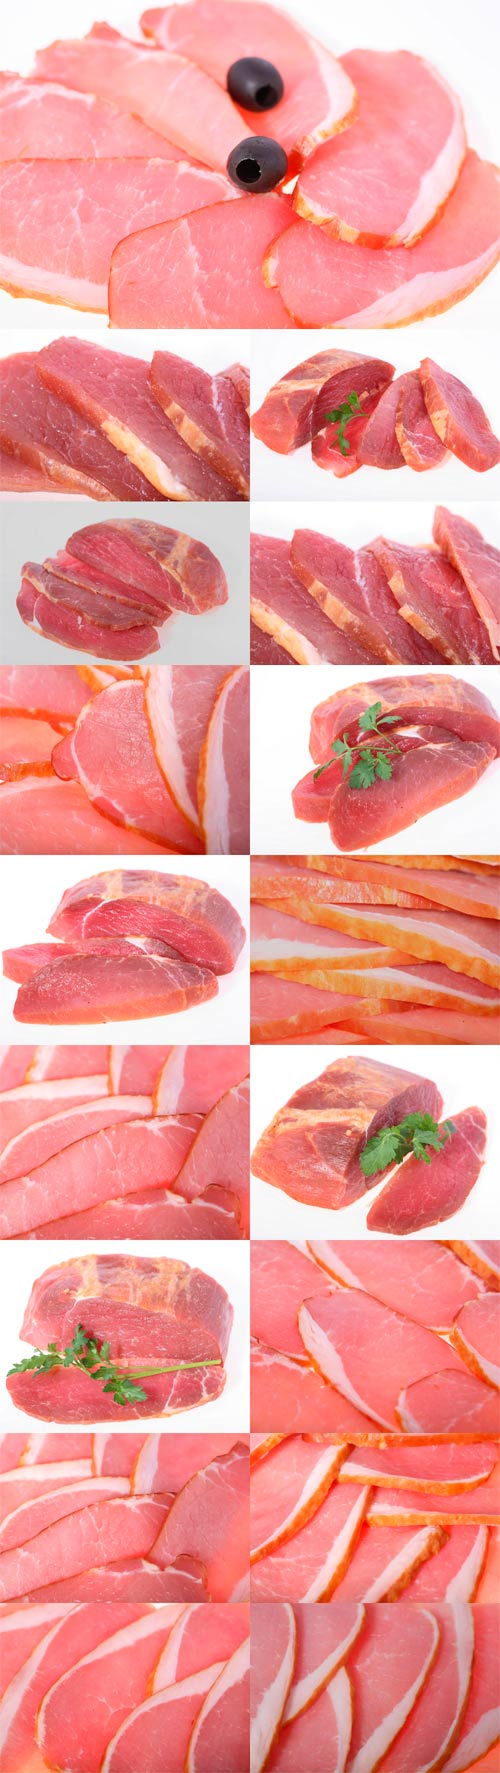 Cutting fresh raw meat